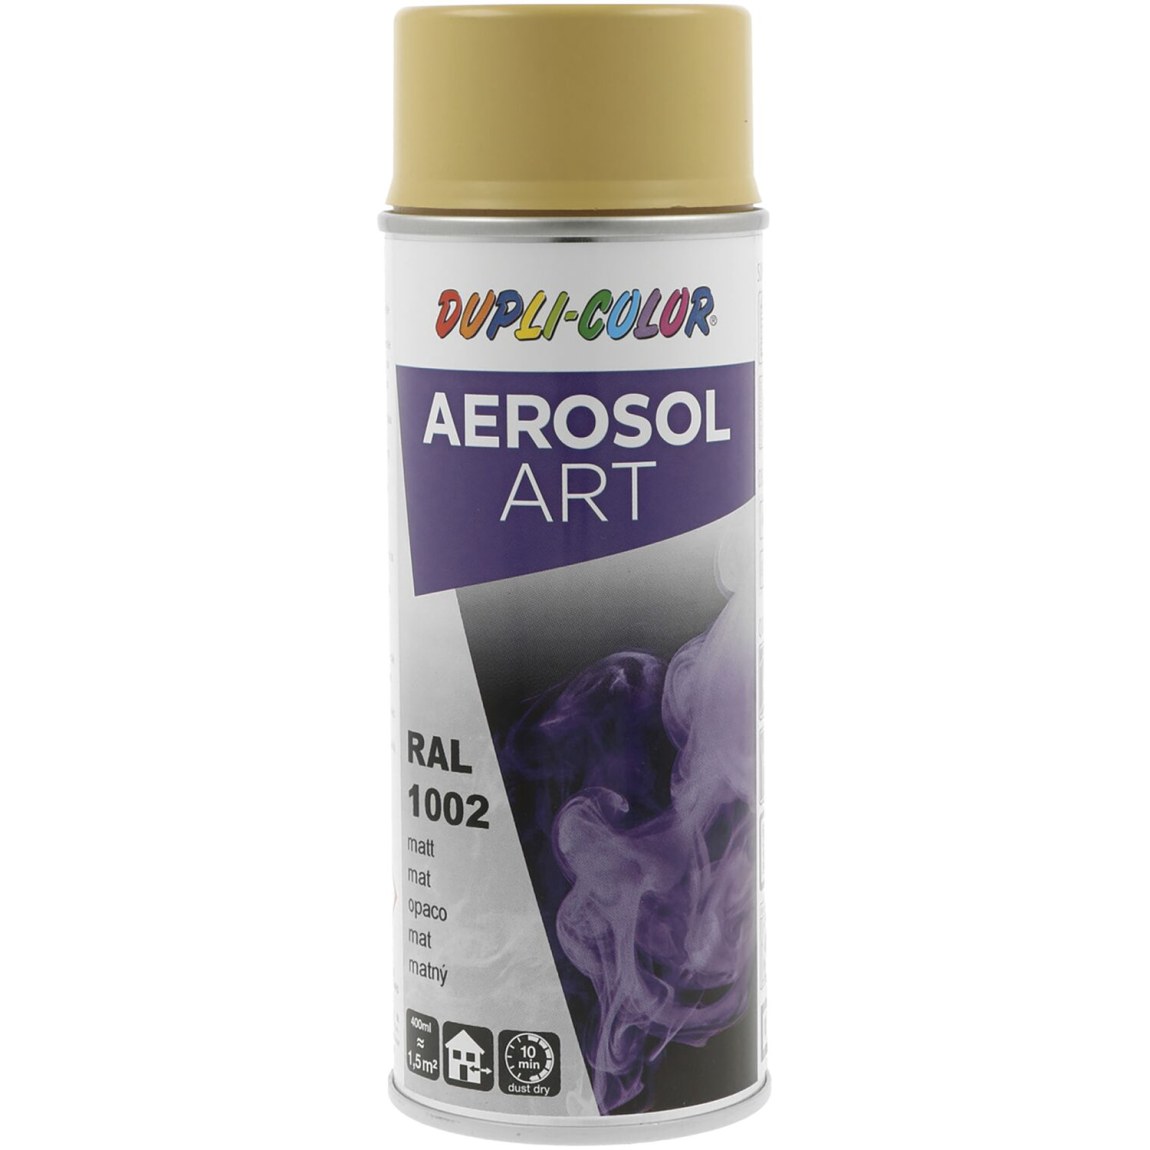 Dupli-Color Aerosol Art sprej 400 ml písk.žlutá mat / RAL 1002 - Železářství Chemicko-technické výrobky Technické aerosoly Lak ve Spreji